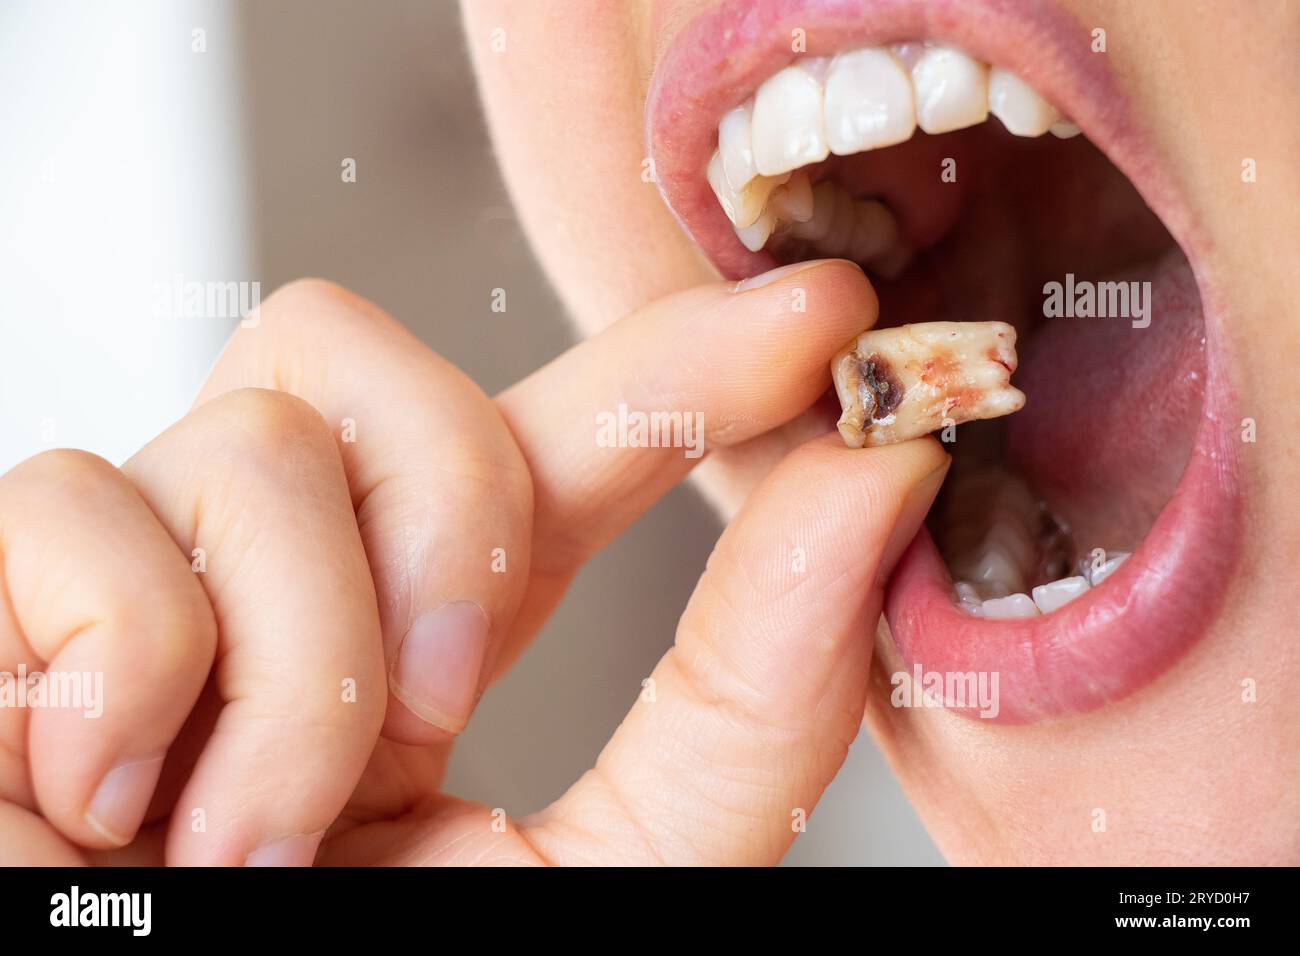 Ein Mädchen in der Hand hält einen ausgezogenen Zahn mit einem schwarzen Loch in der Mitte des Zahns nah an, einen kranken Zahn in der Hand nach der Entfernung, der n könnte Stockfoto